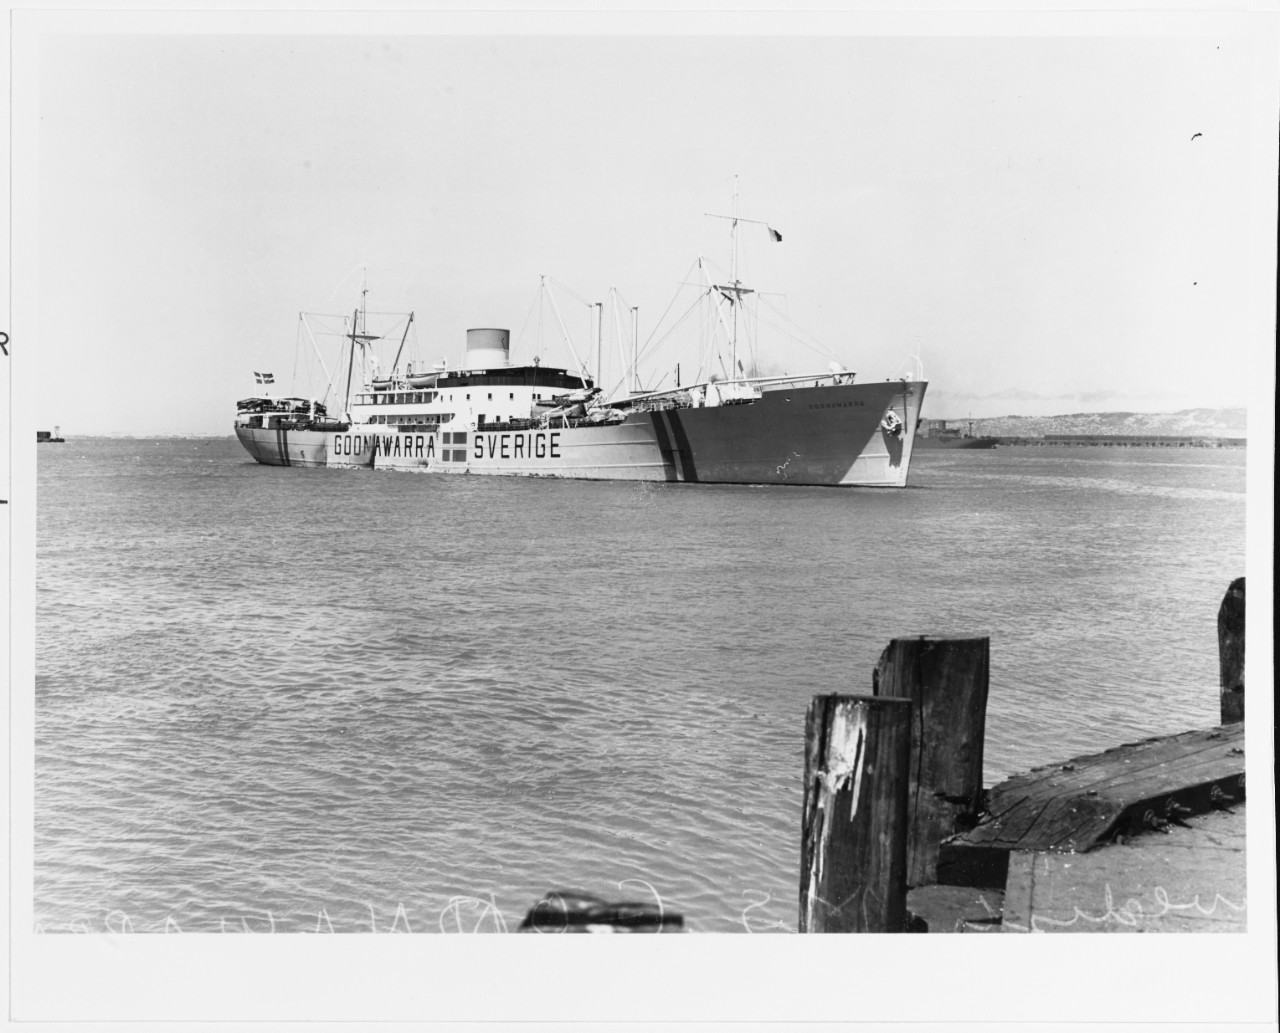 M.V. GOONAWARRA (Swedish Merchant Cargo Ship, 1937-1968.